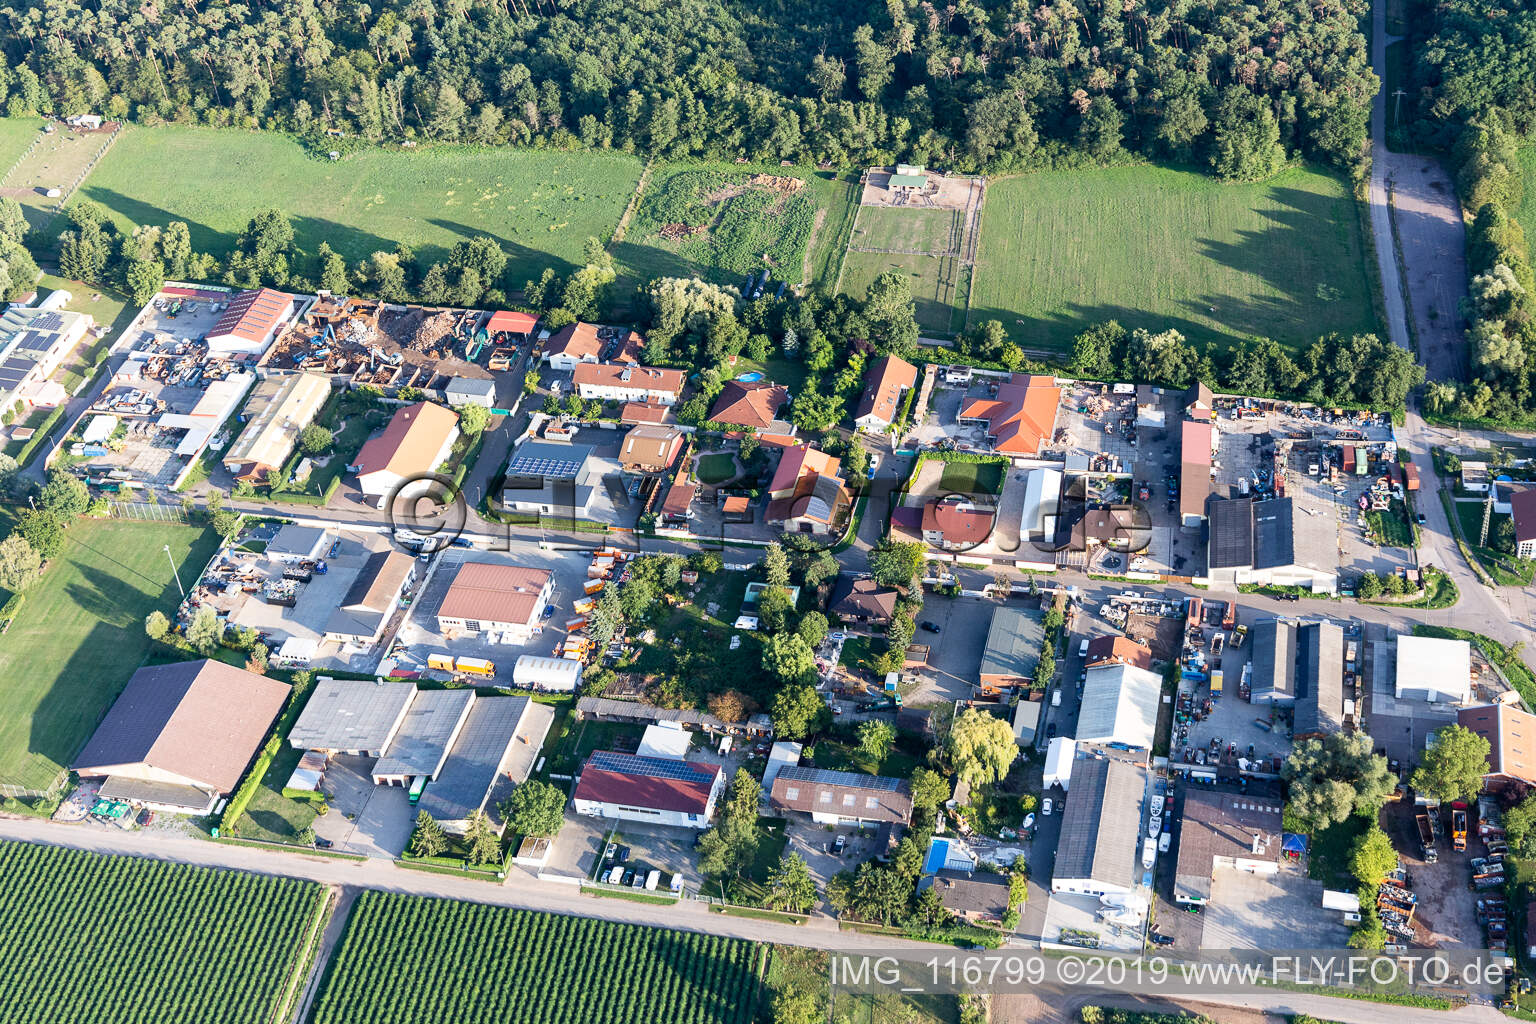 Vue aérienne de Zone industrielle Am Unteren Griesweg avec C-Tec KFT à Lustadt dans le département Rhénanie-Palatinat, Allemagne